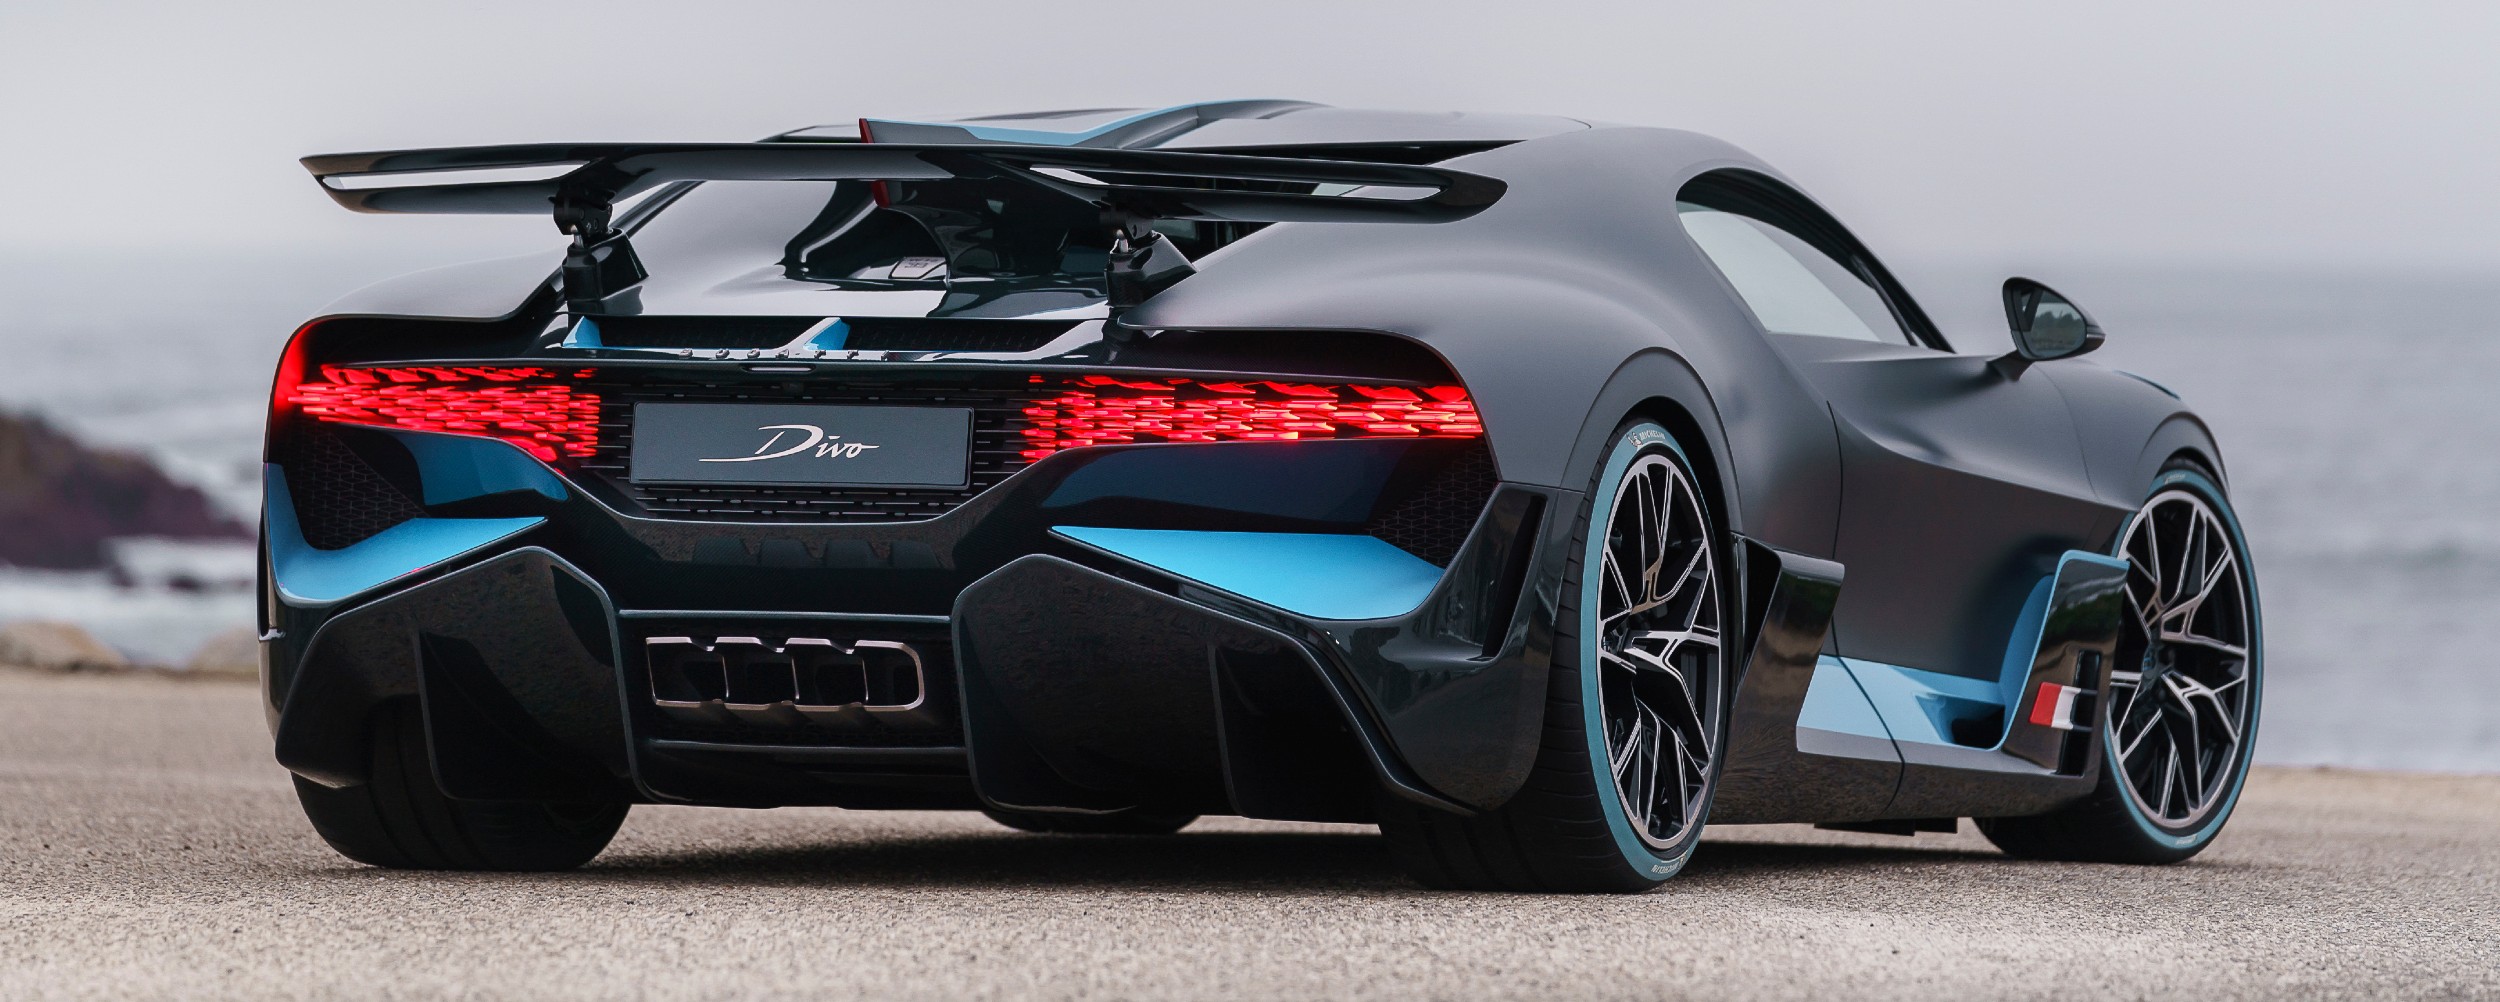 Πόσο κοστίζει σήμερα ένα Bugatti Divo;